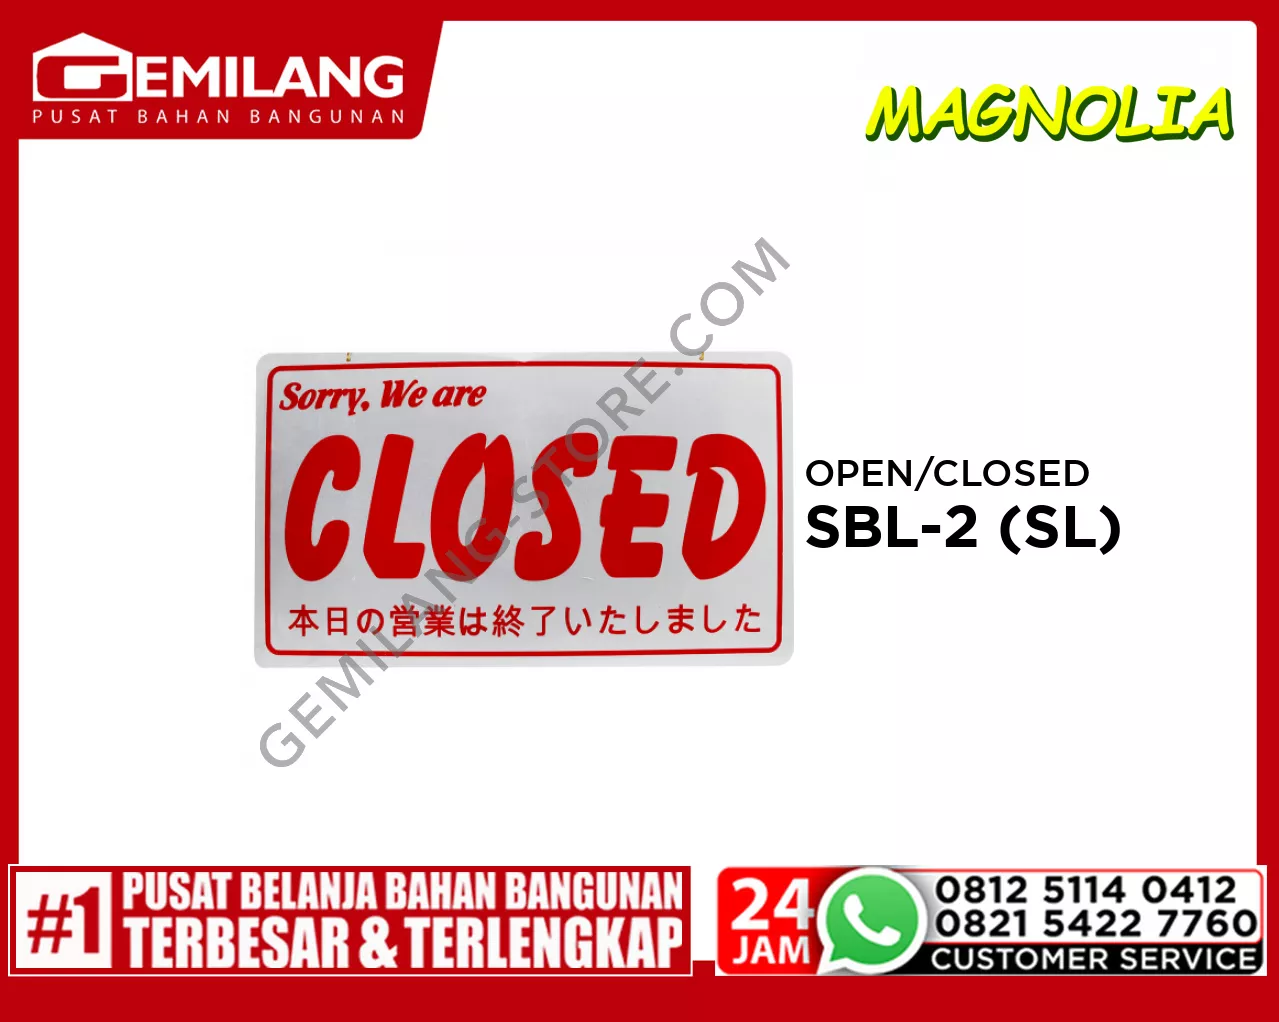 OPEN/CLOSED SBL-2 (SL)